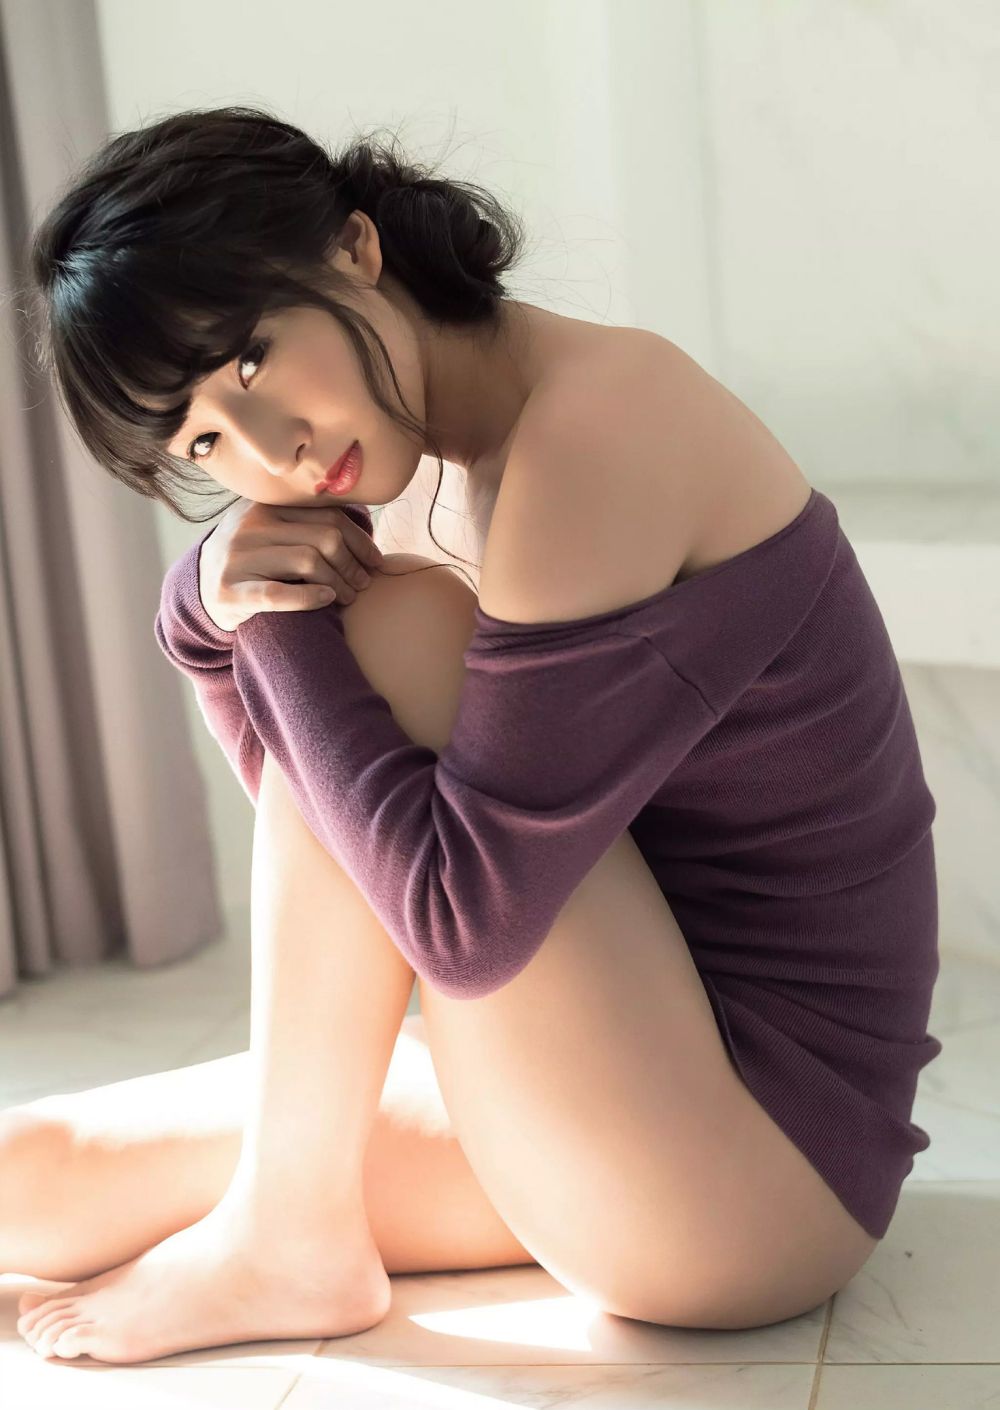 川崎绫性感写真,最新照片,高清图片